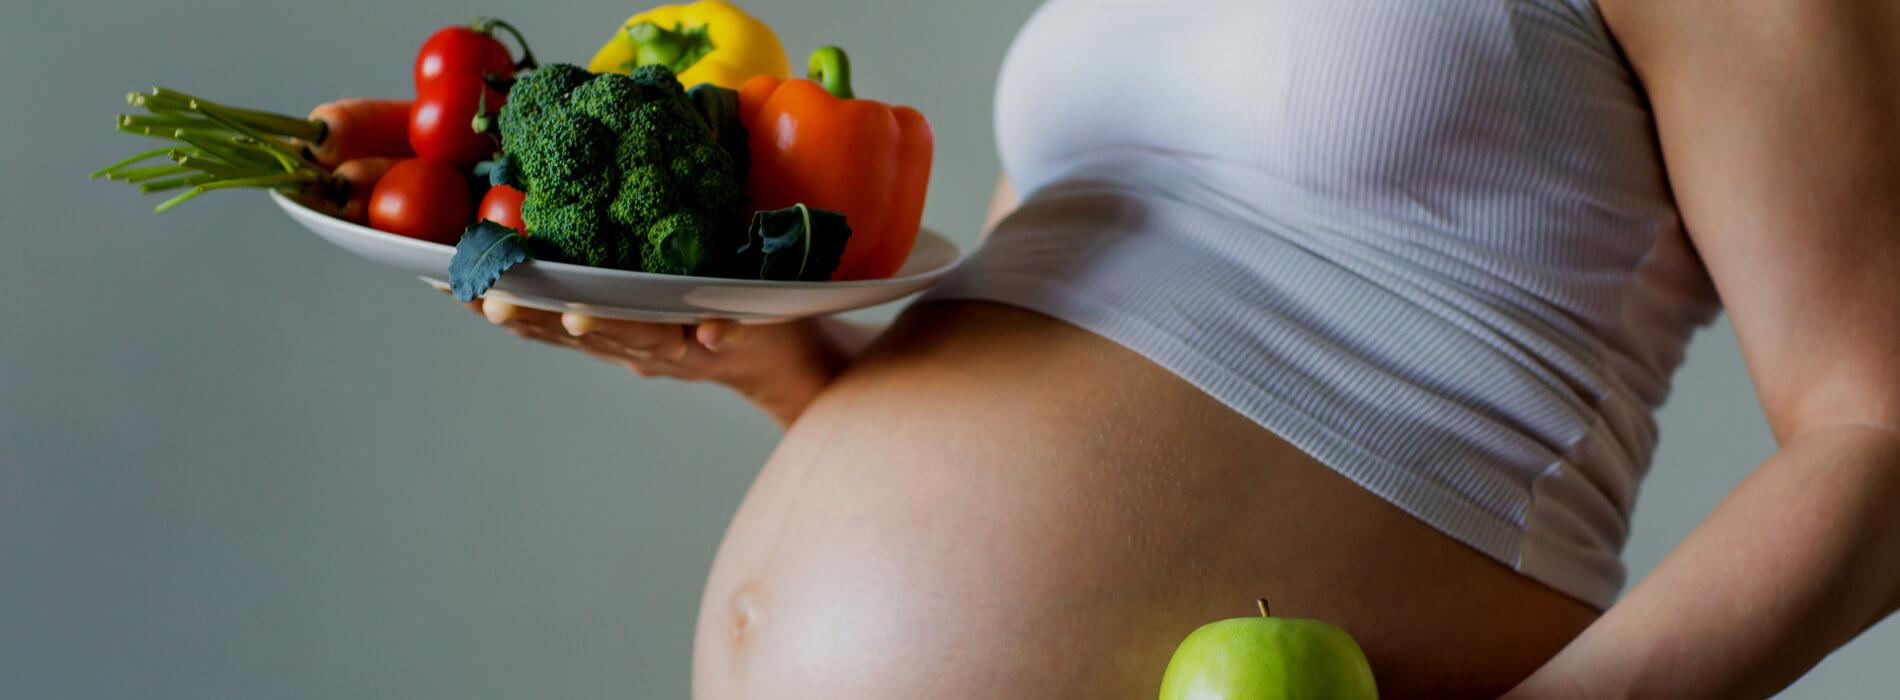 Programowanie metaboliczne płodu - czy dieta i styl życia matki mają wpływ na geny dziecka?